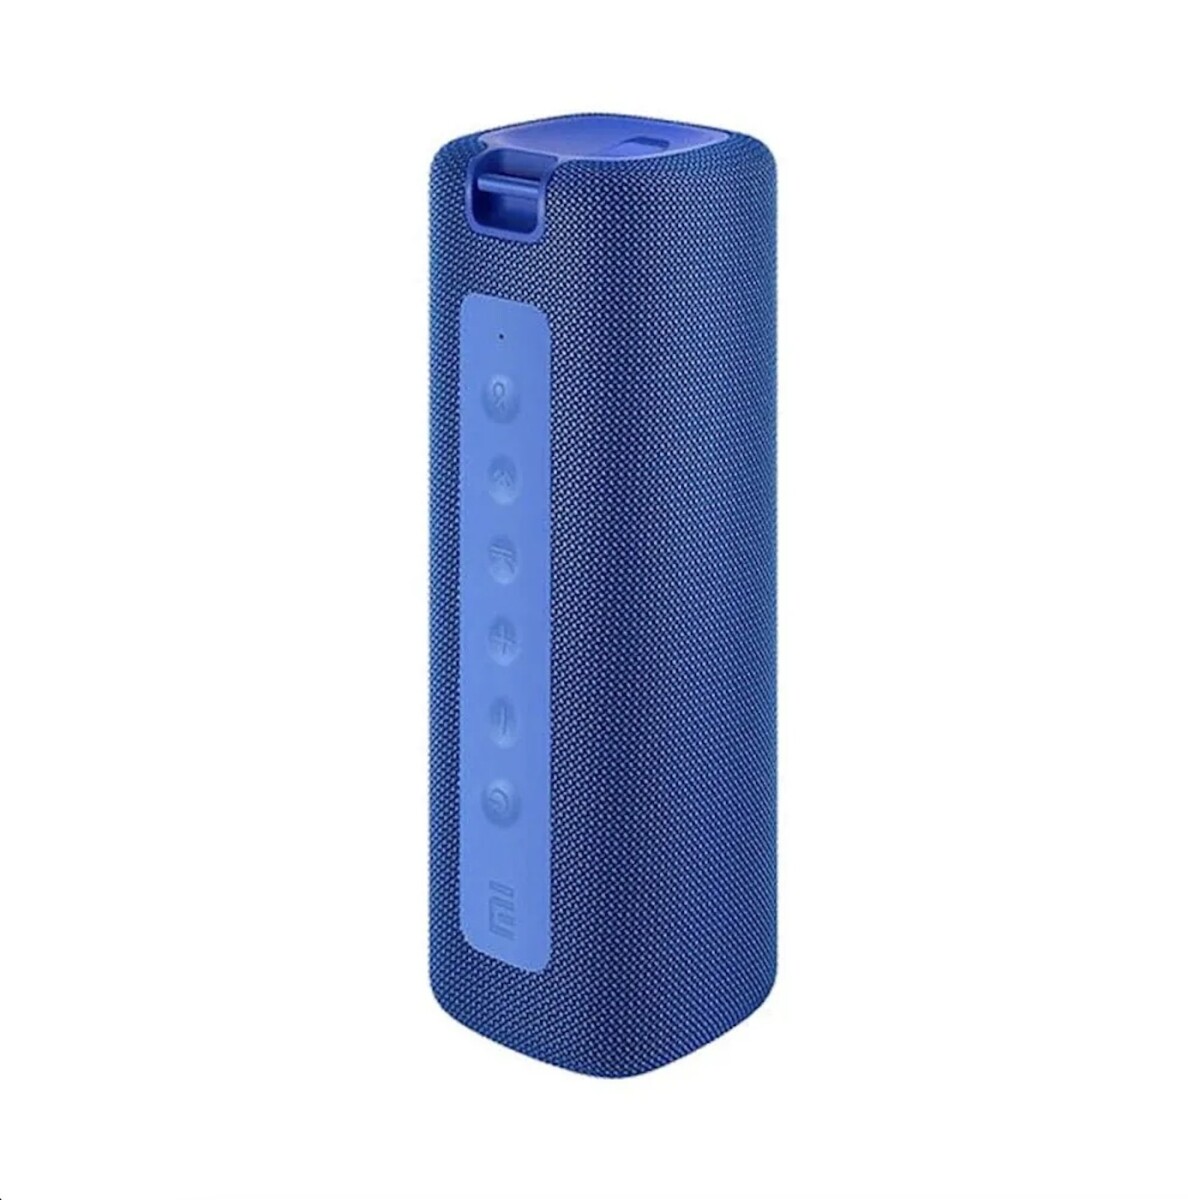 Mi portable bt speaker 16w waterproof - Blue 